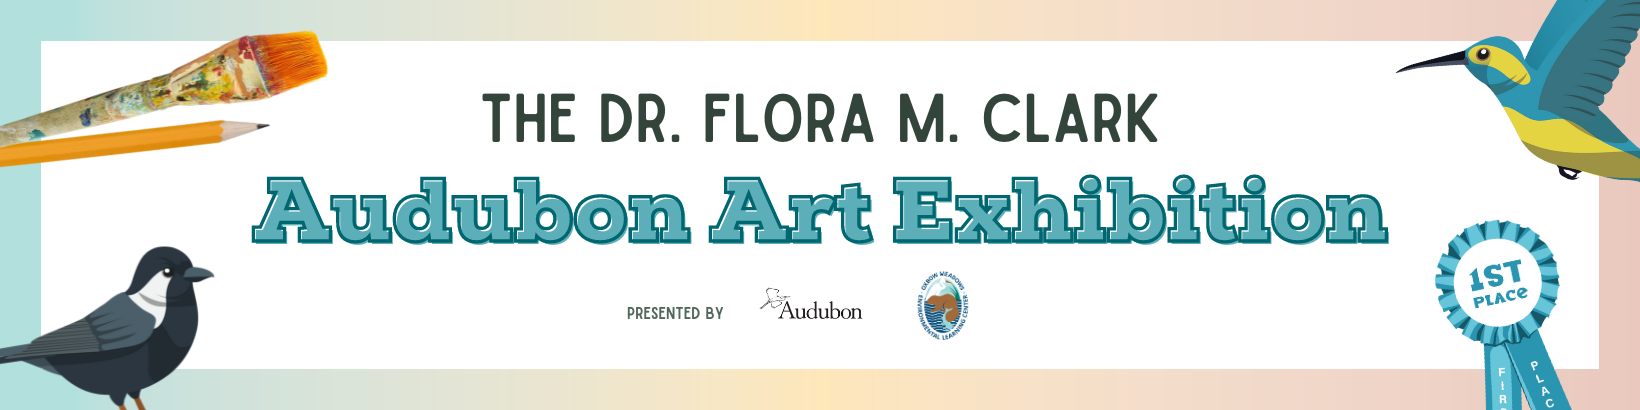 The Dr. Flora M. Clark Audubon Art Exhibition